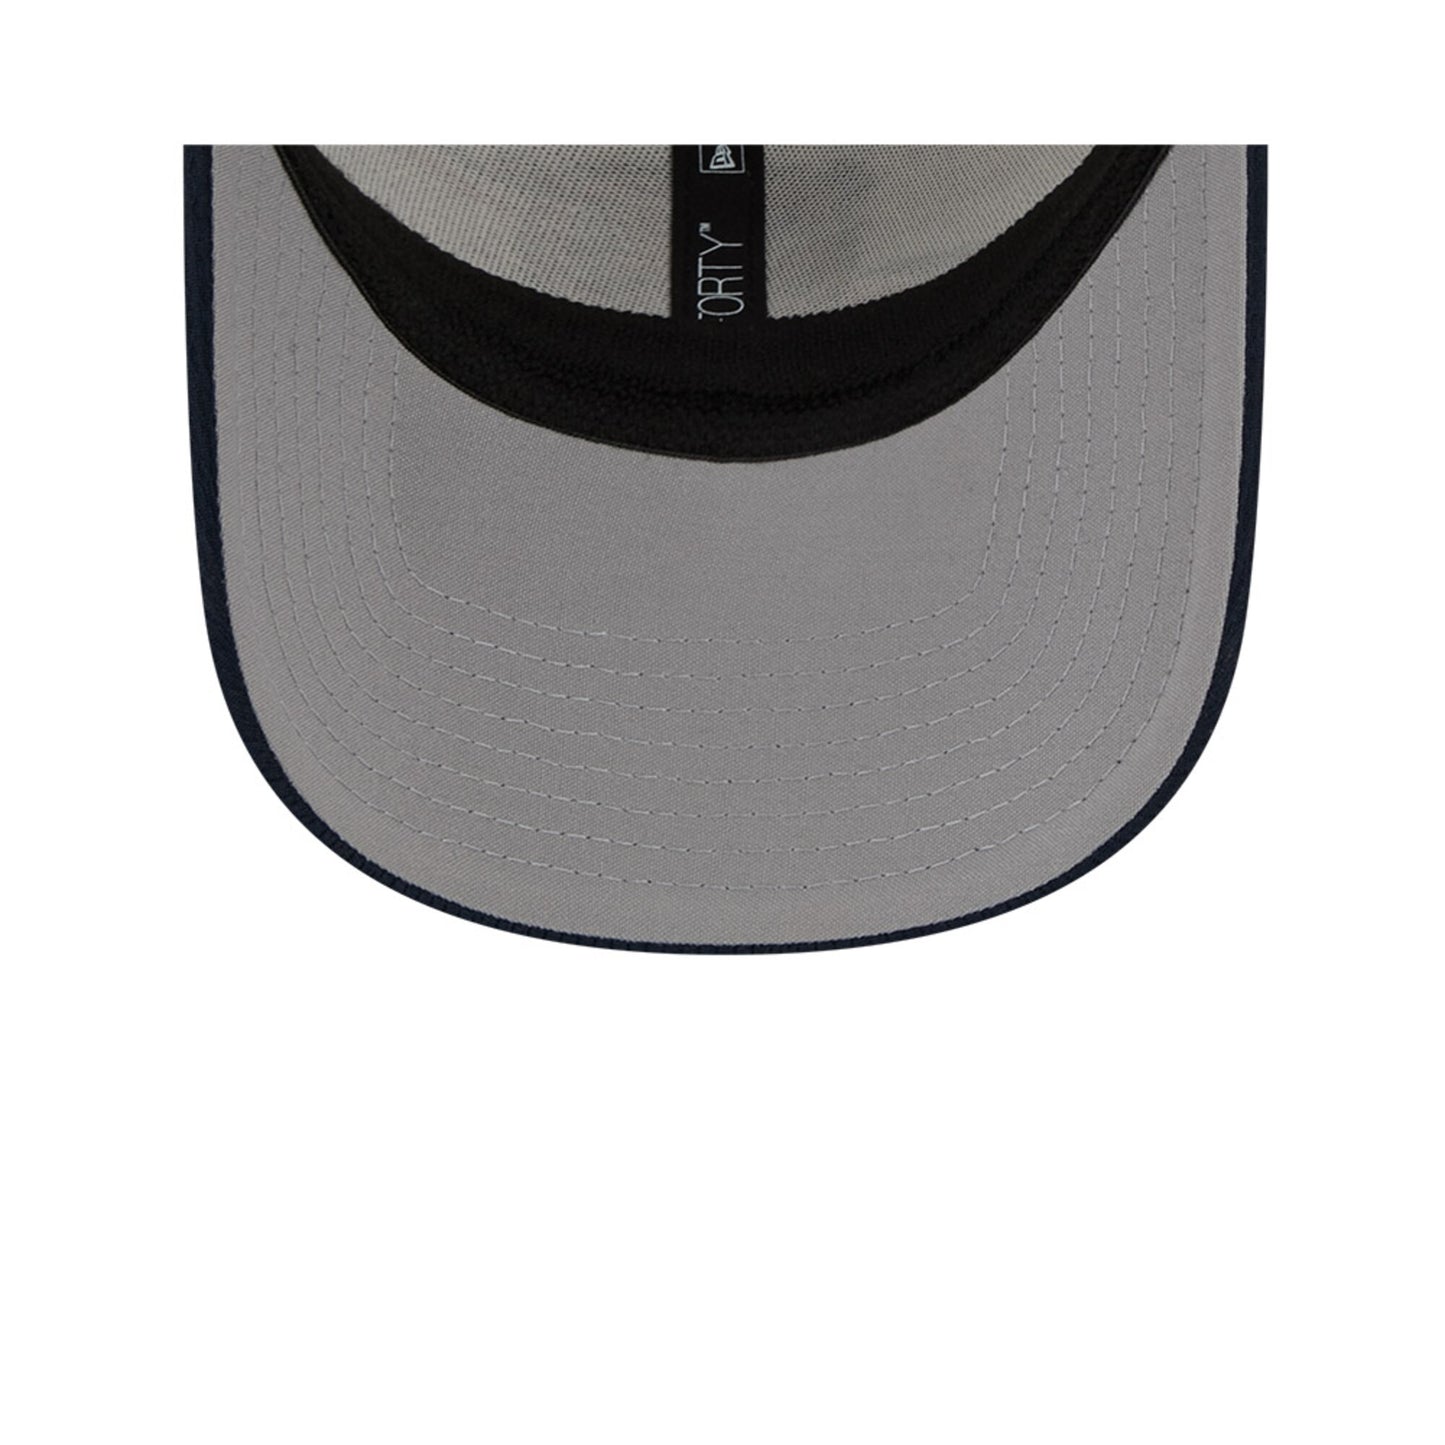 Men's Chicago Bears New Era White/Navy 2023 NFL Alternate Logo 9FORTY Adjustable Hat